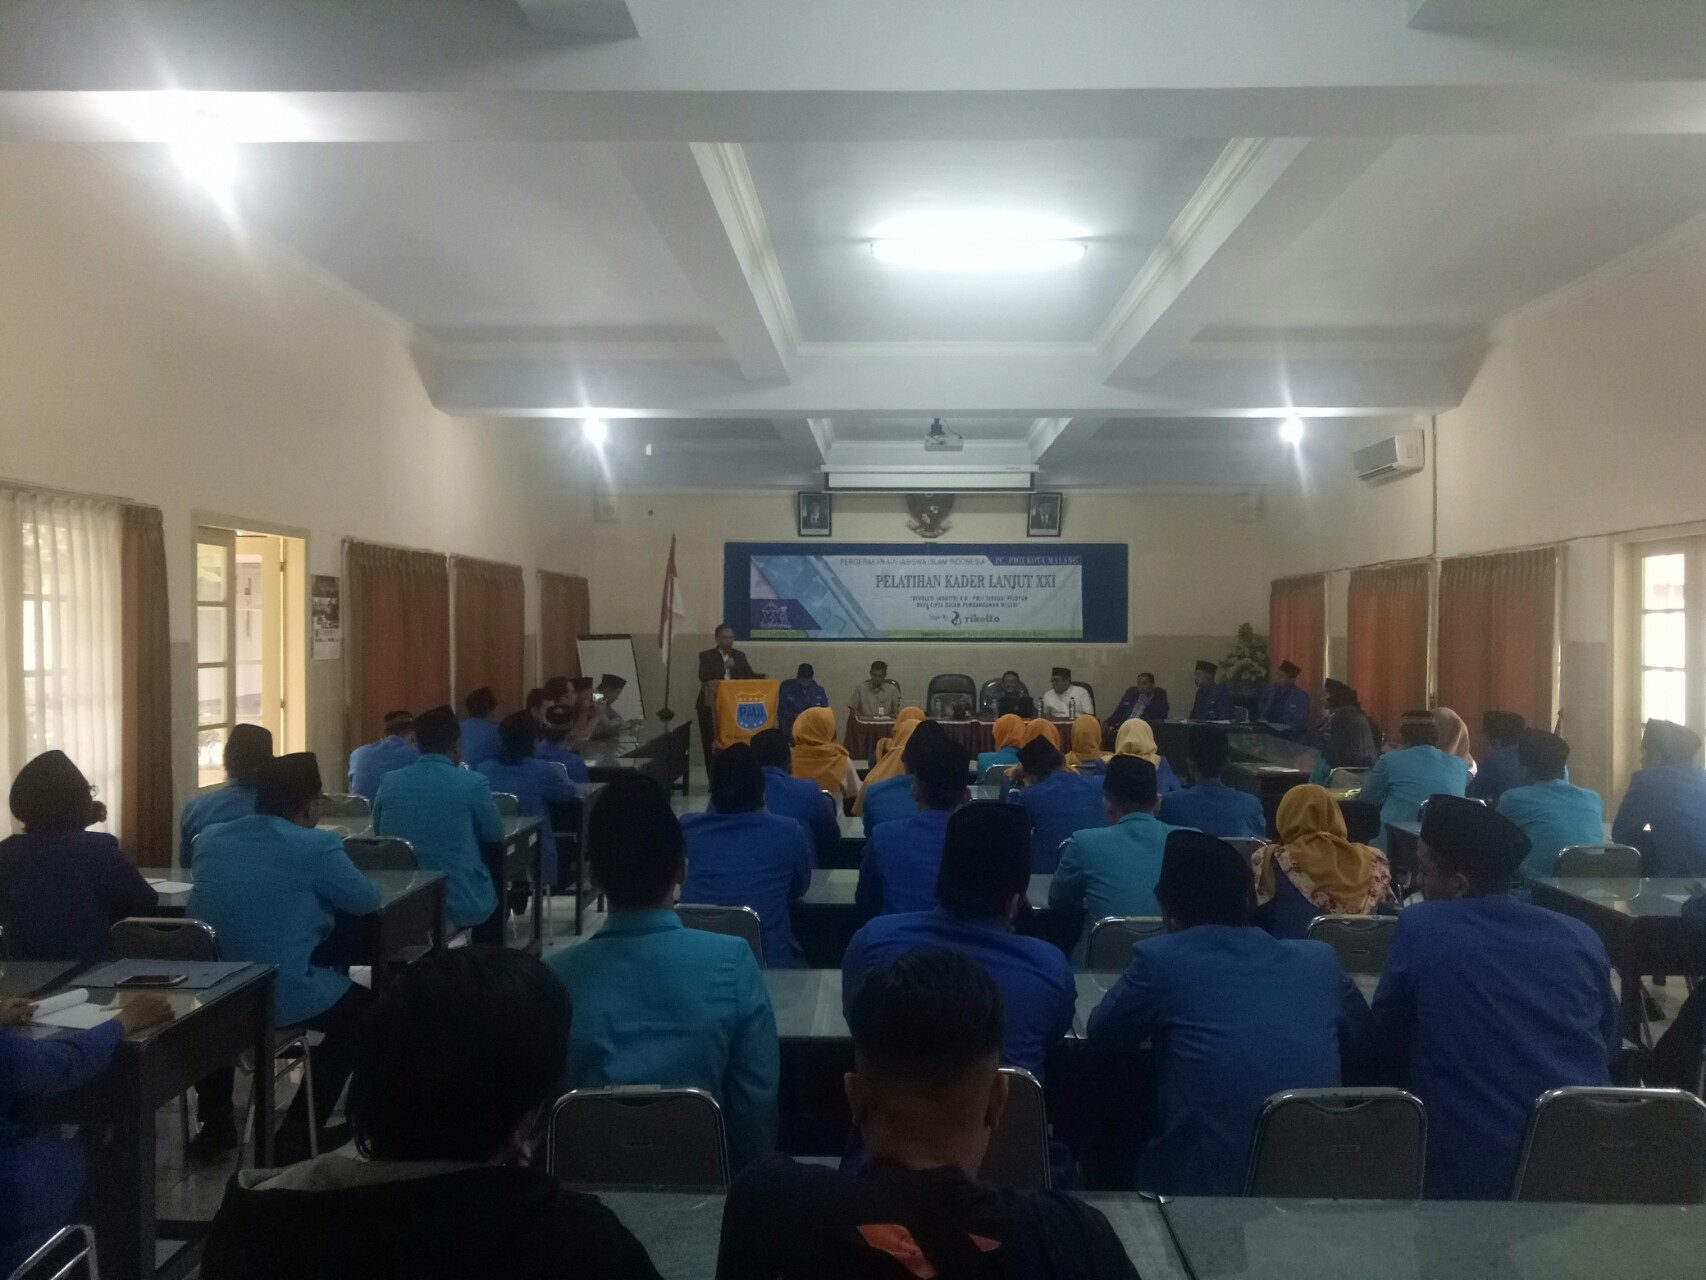 Pelatihan Kader Lanjut XXI di Gedung Balai Besar Pemerintahan Desa, Kota Malang, Selasa 18 Desember 2018.